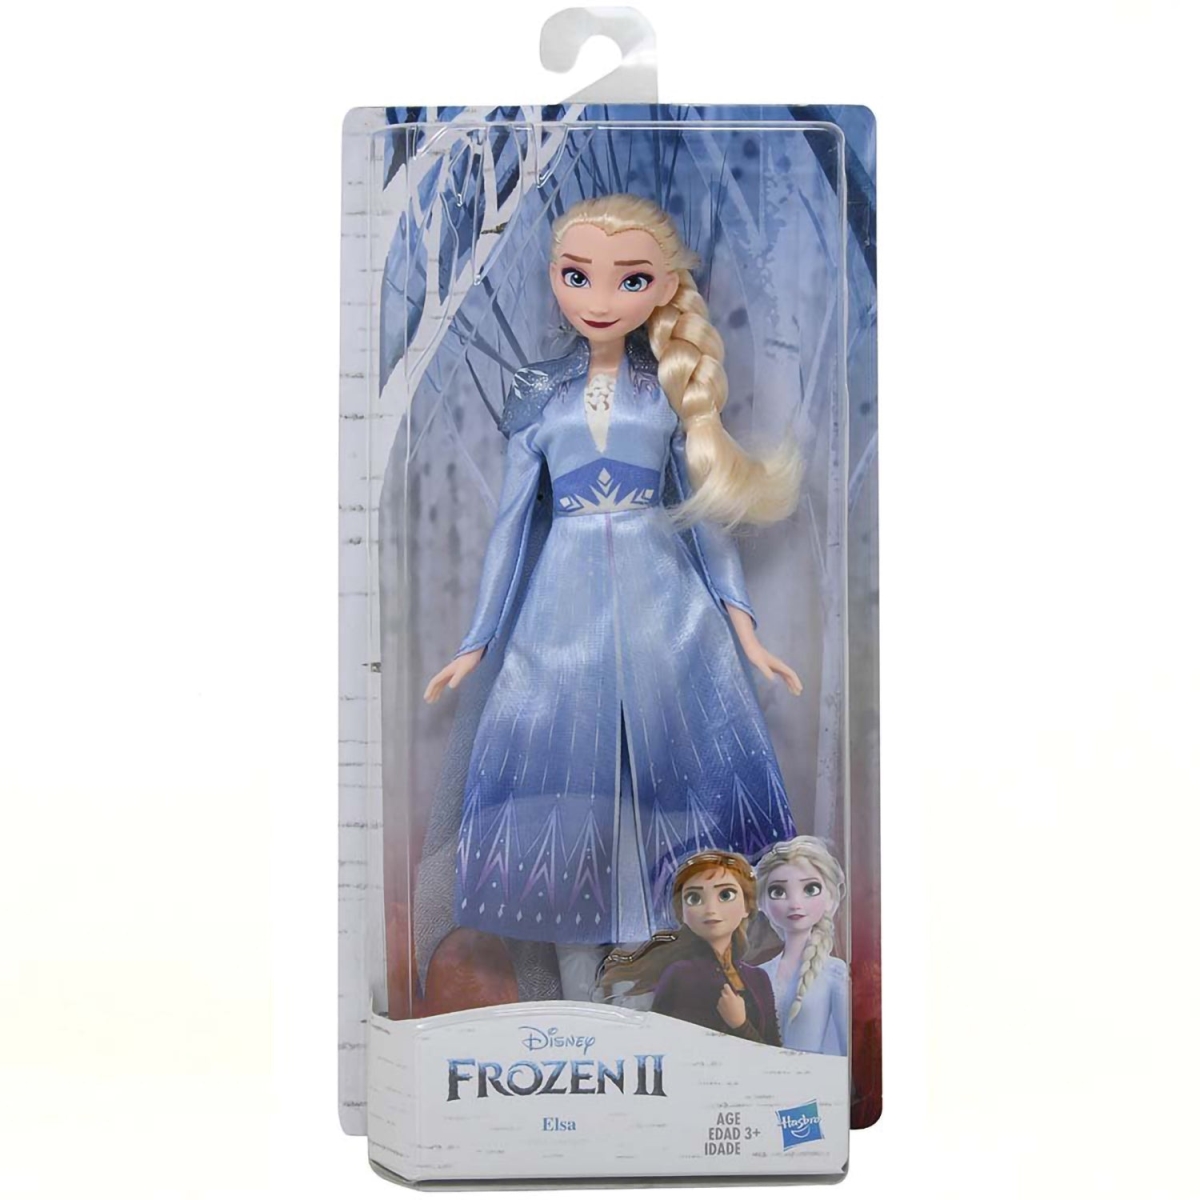 Disney 30393090 12 in. Frozen II Elsa Fashion Doll